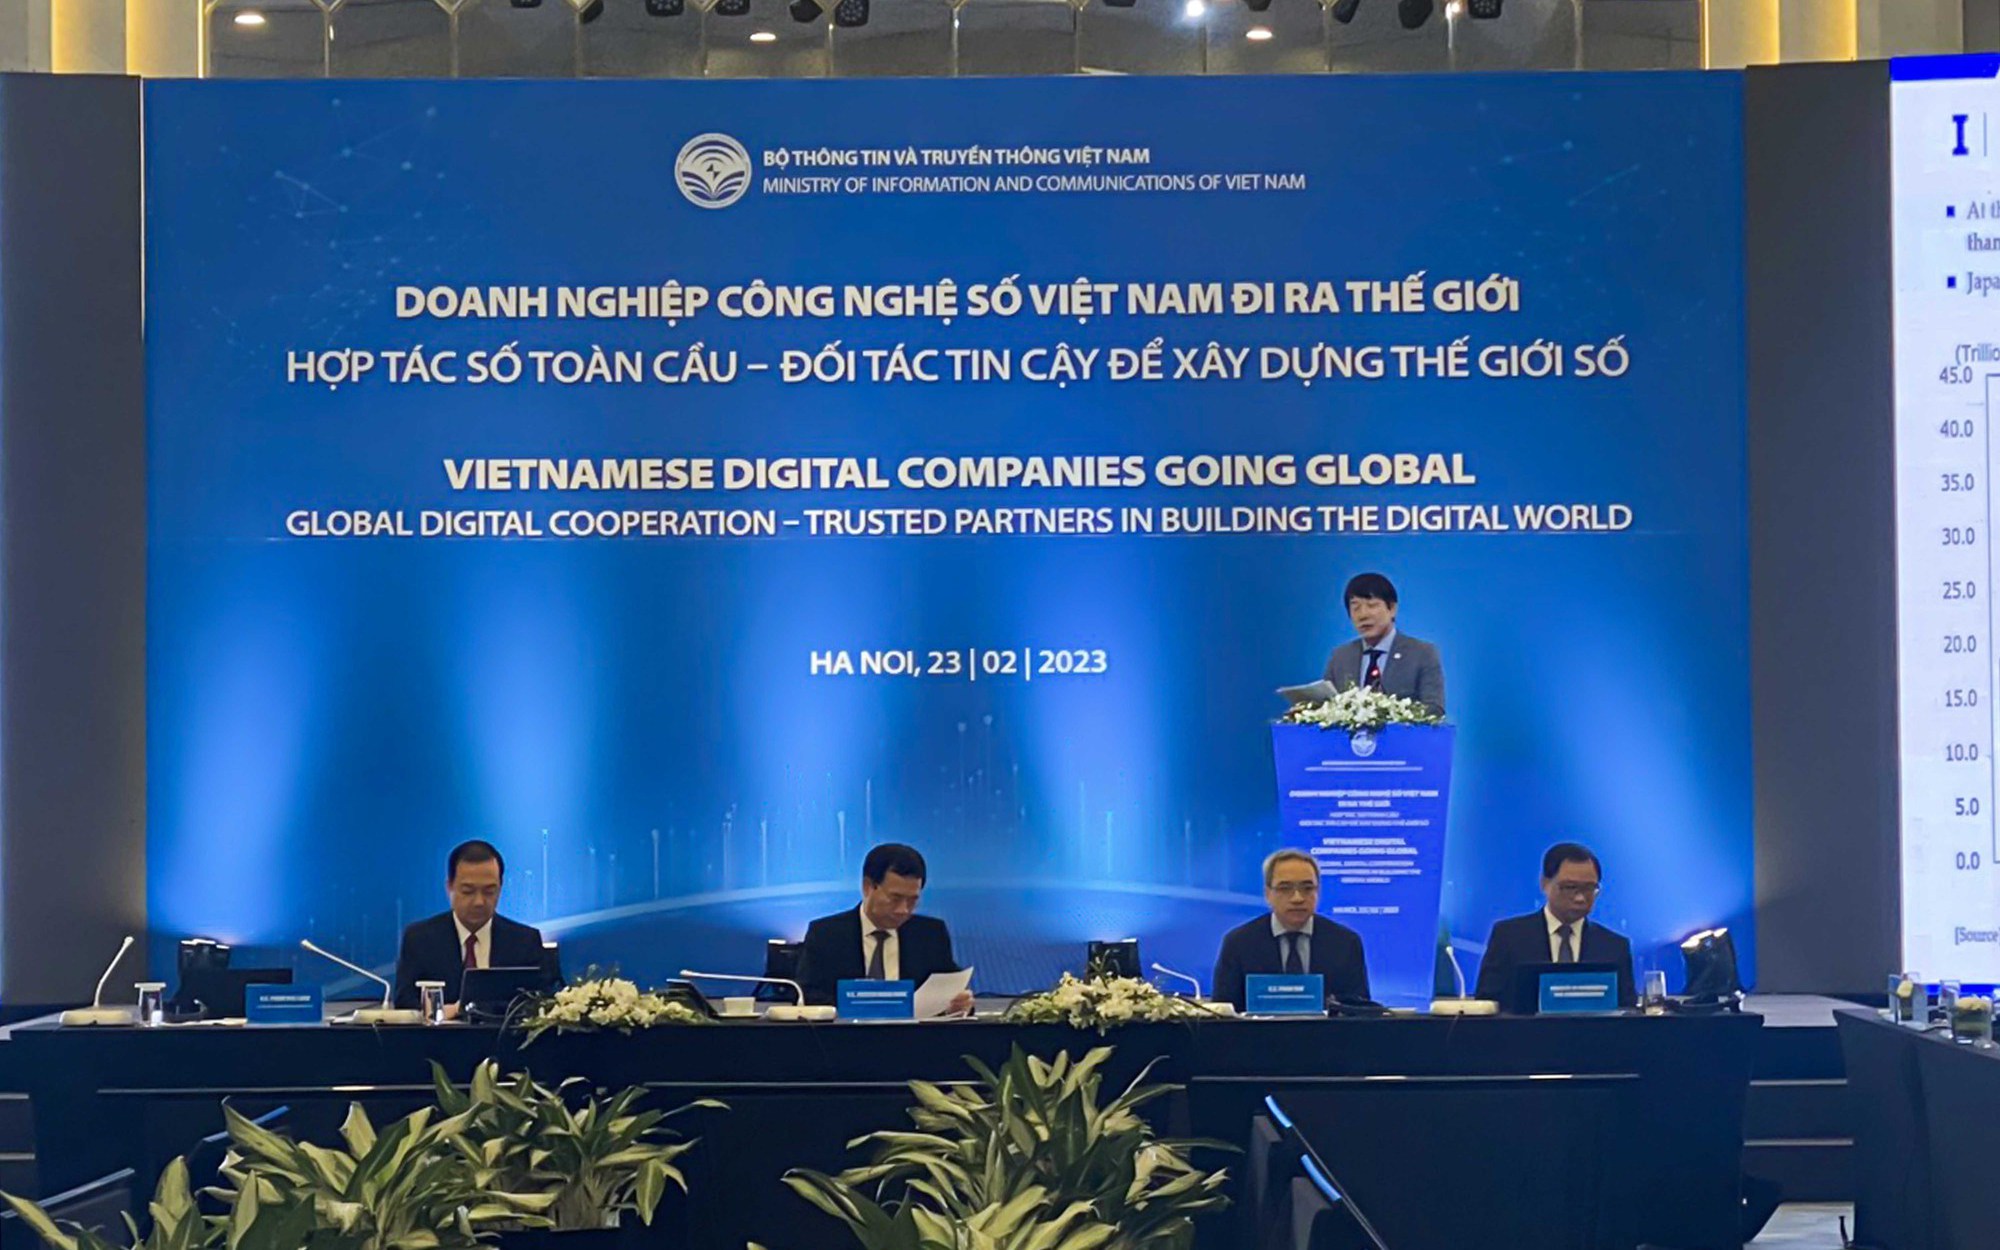 Hội nghị “Doanh nghiệp Công nghệ số Việt Nam đi ra thế giới”, cơ hội, thách thức và những bài học người đi trước